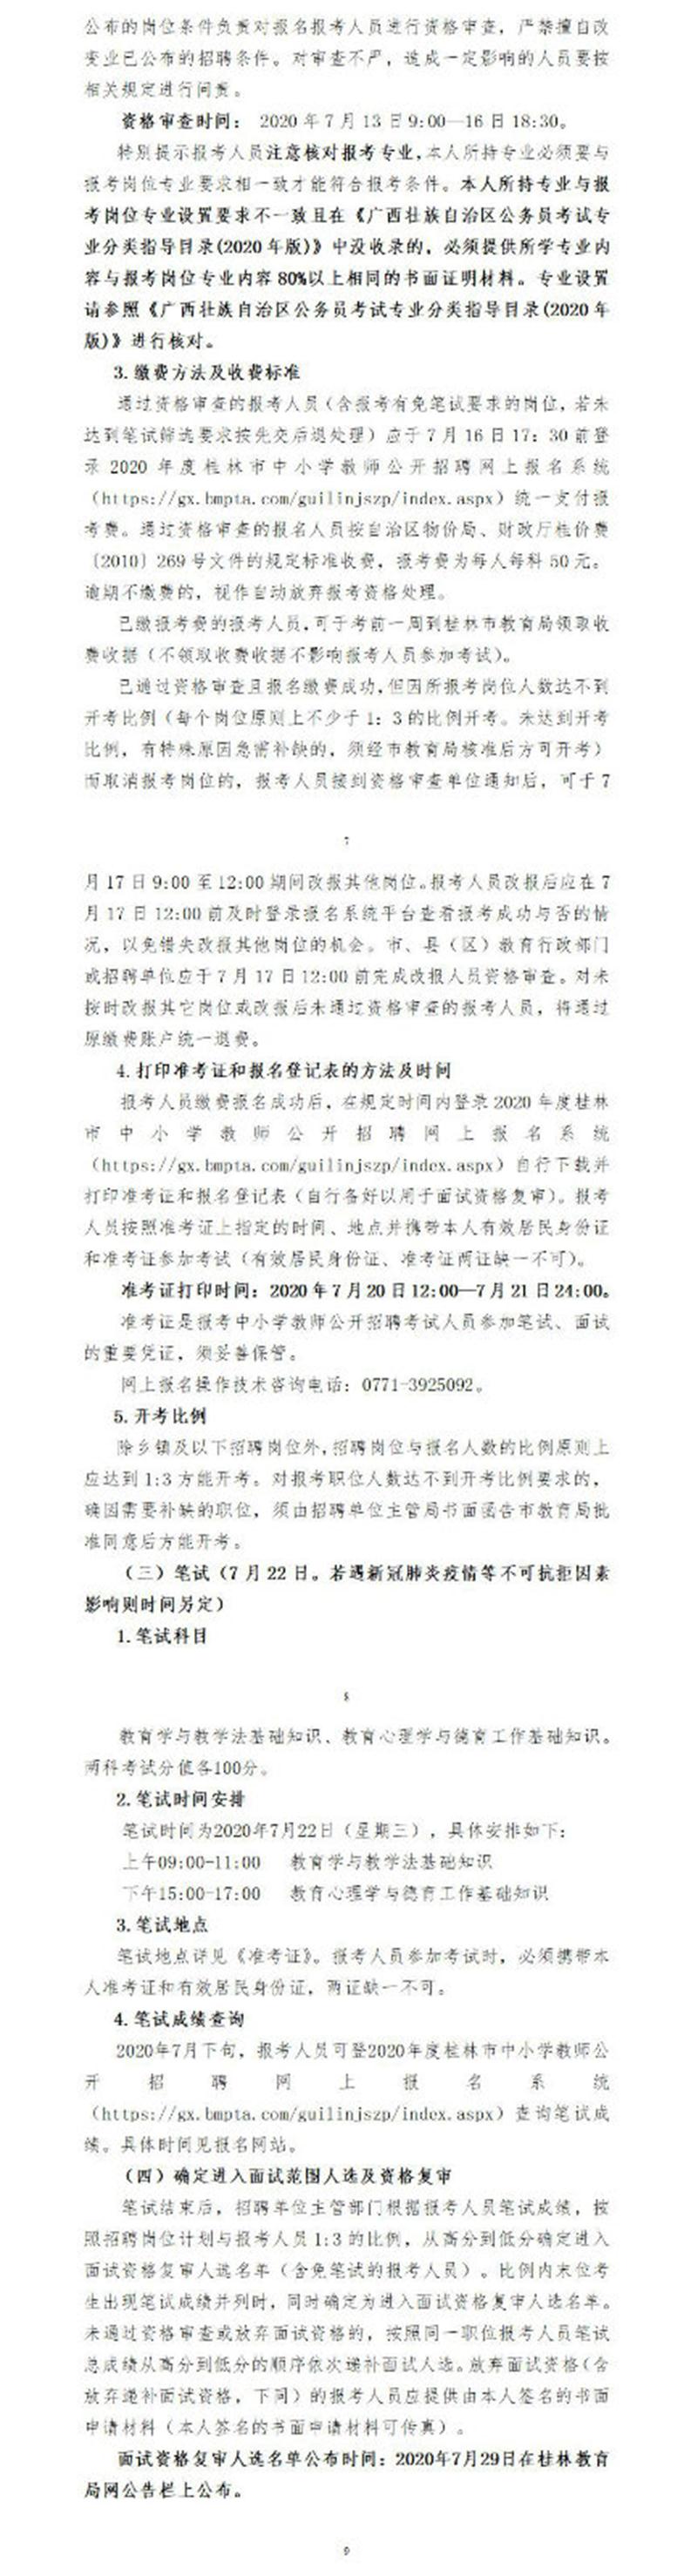 广西桂林市中小学教师招聘1598人公告